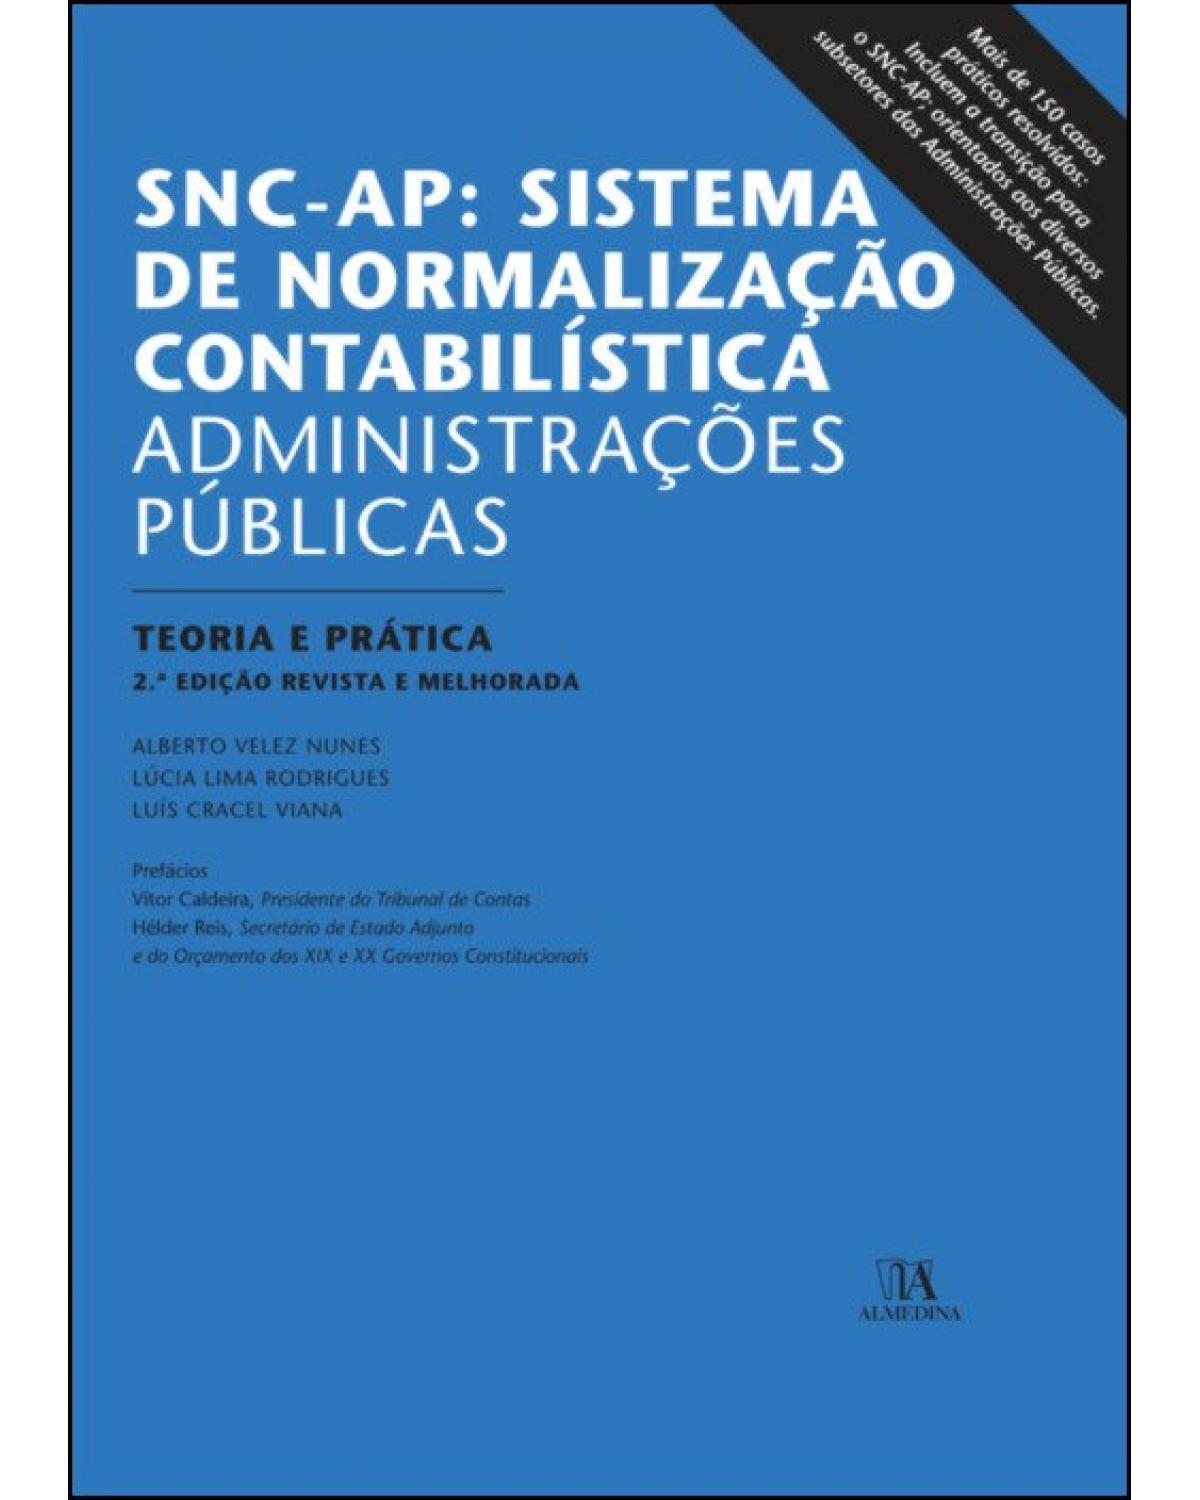 SNC-AP: Sistema de normalização contabilística - Administrações públicas - teoria e prática - 2ª Edição | 2019